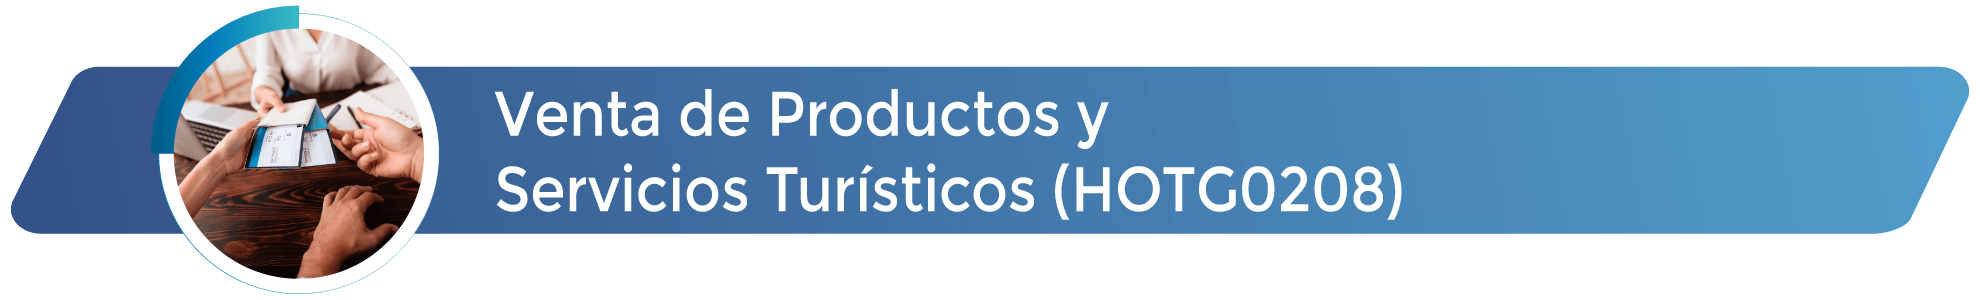 HOTG0208 - Venta de Productos y Servicios Turísticos